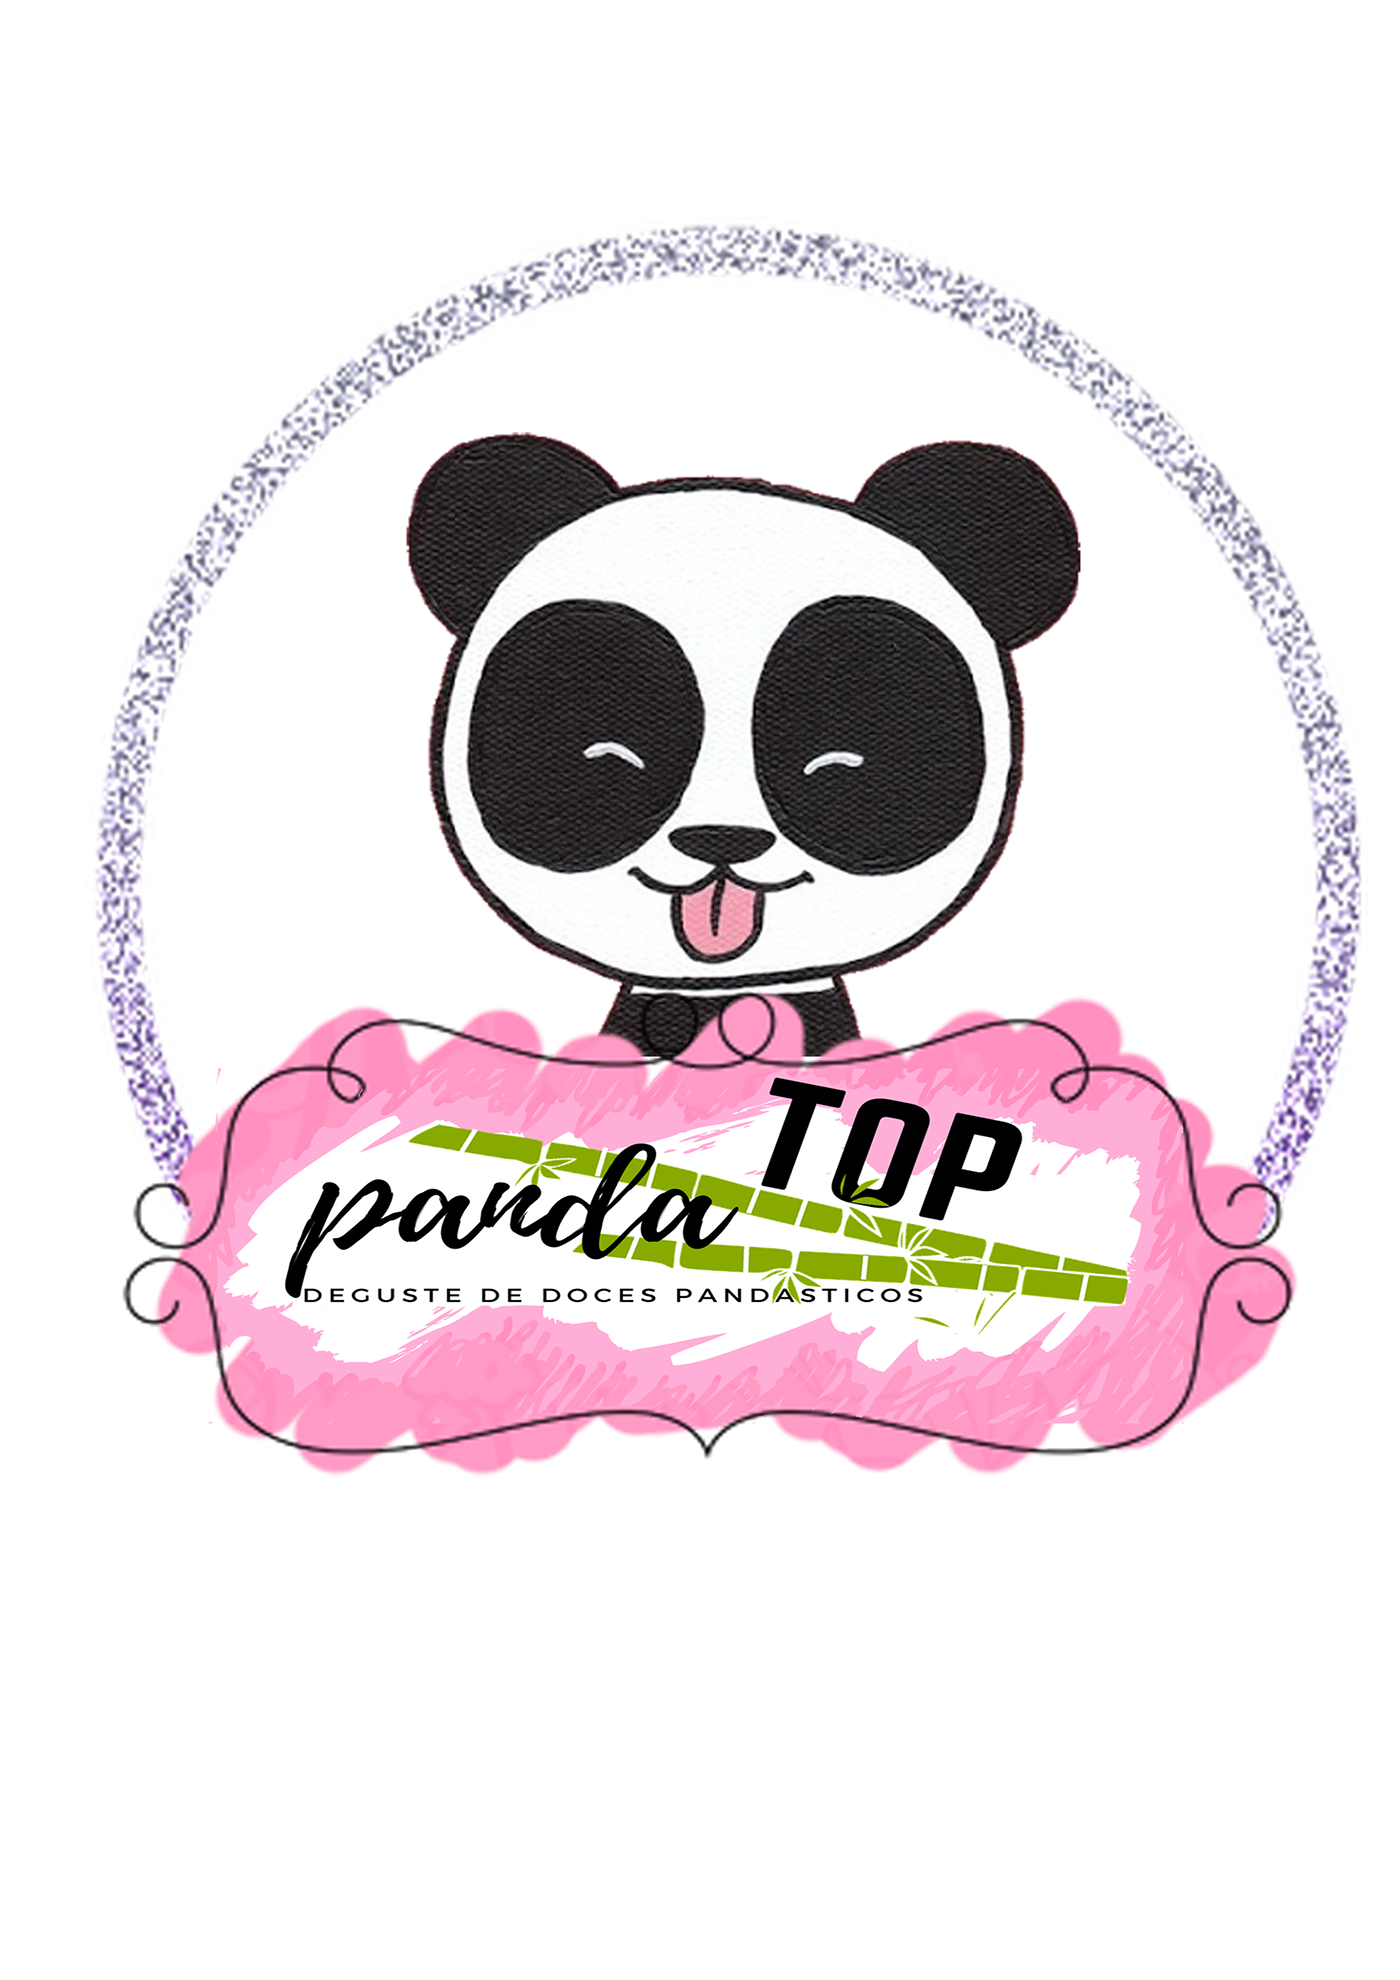 fanpage Panda  videos logo Logomarca edição de imagens publicidade